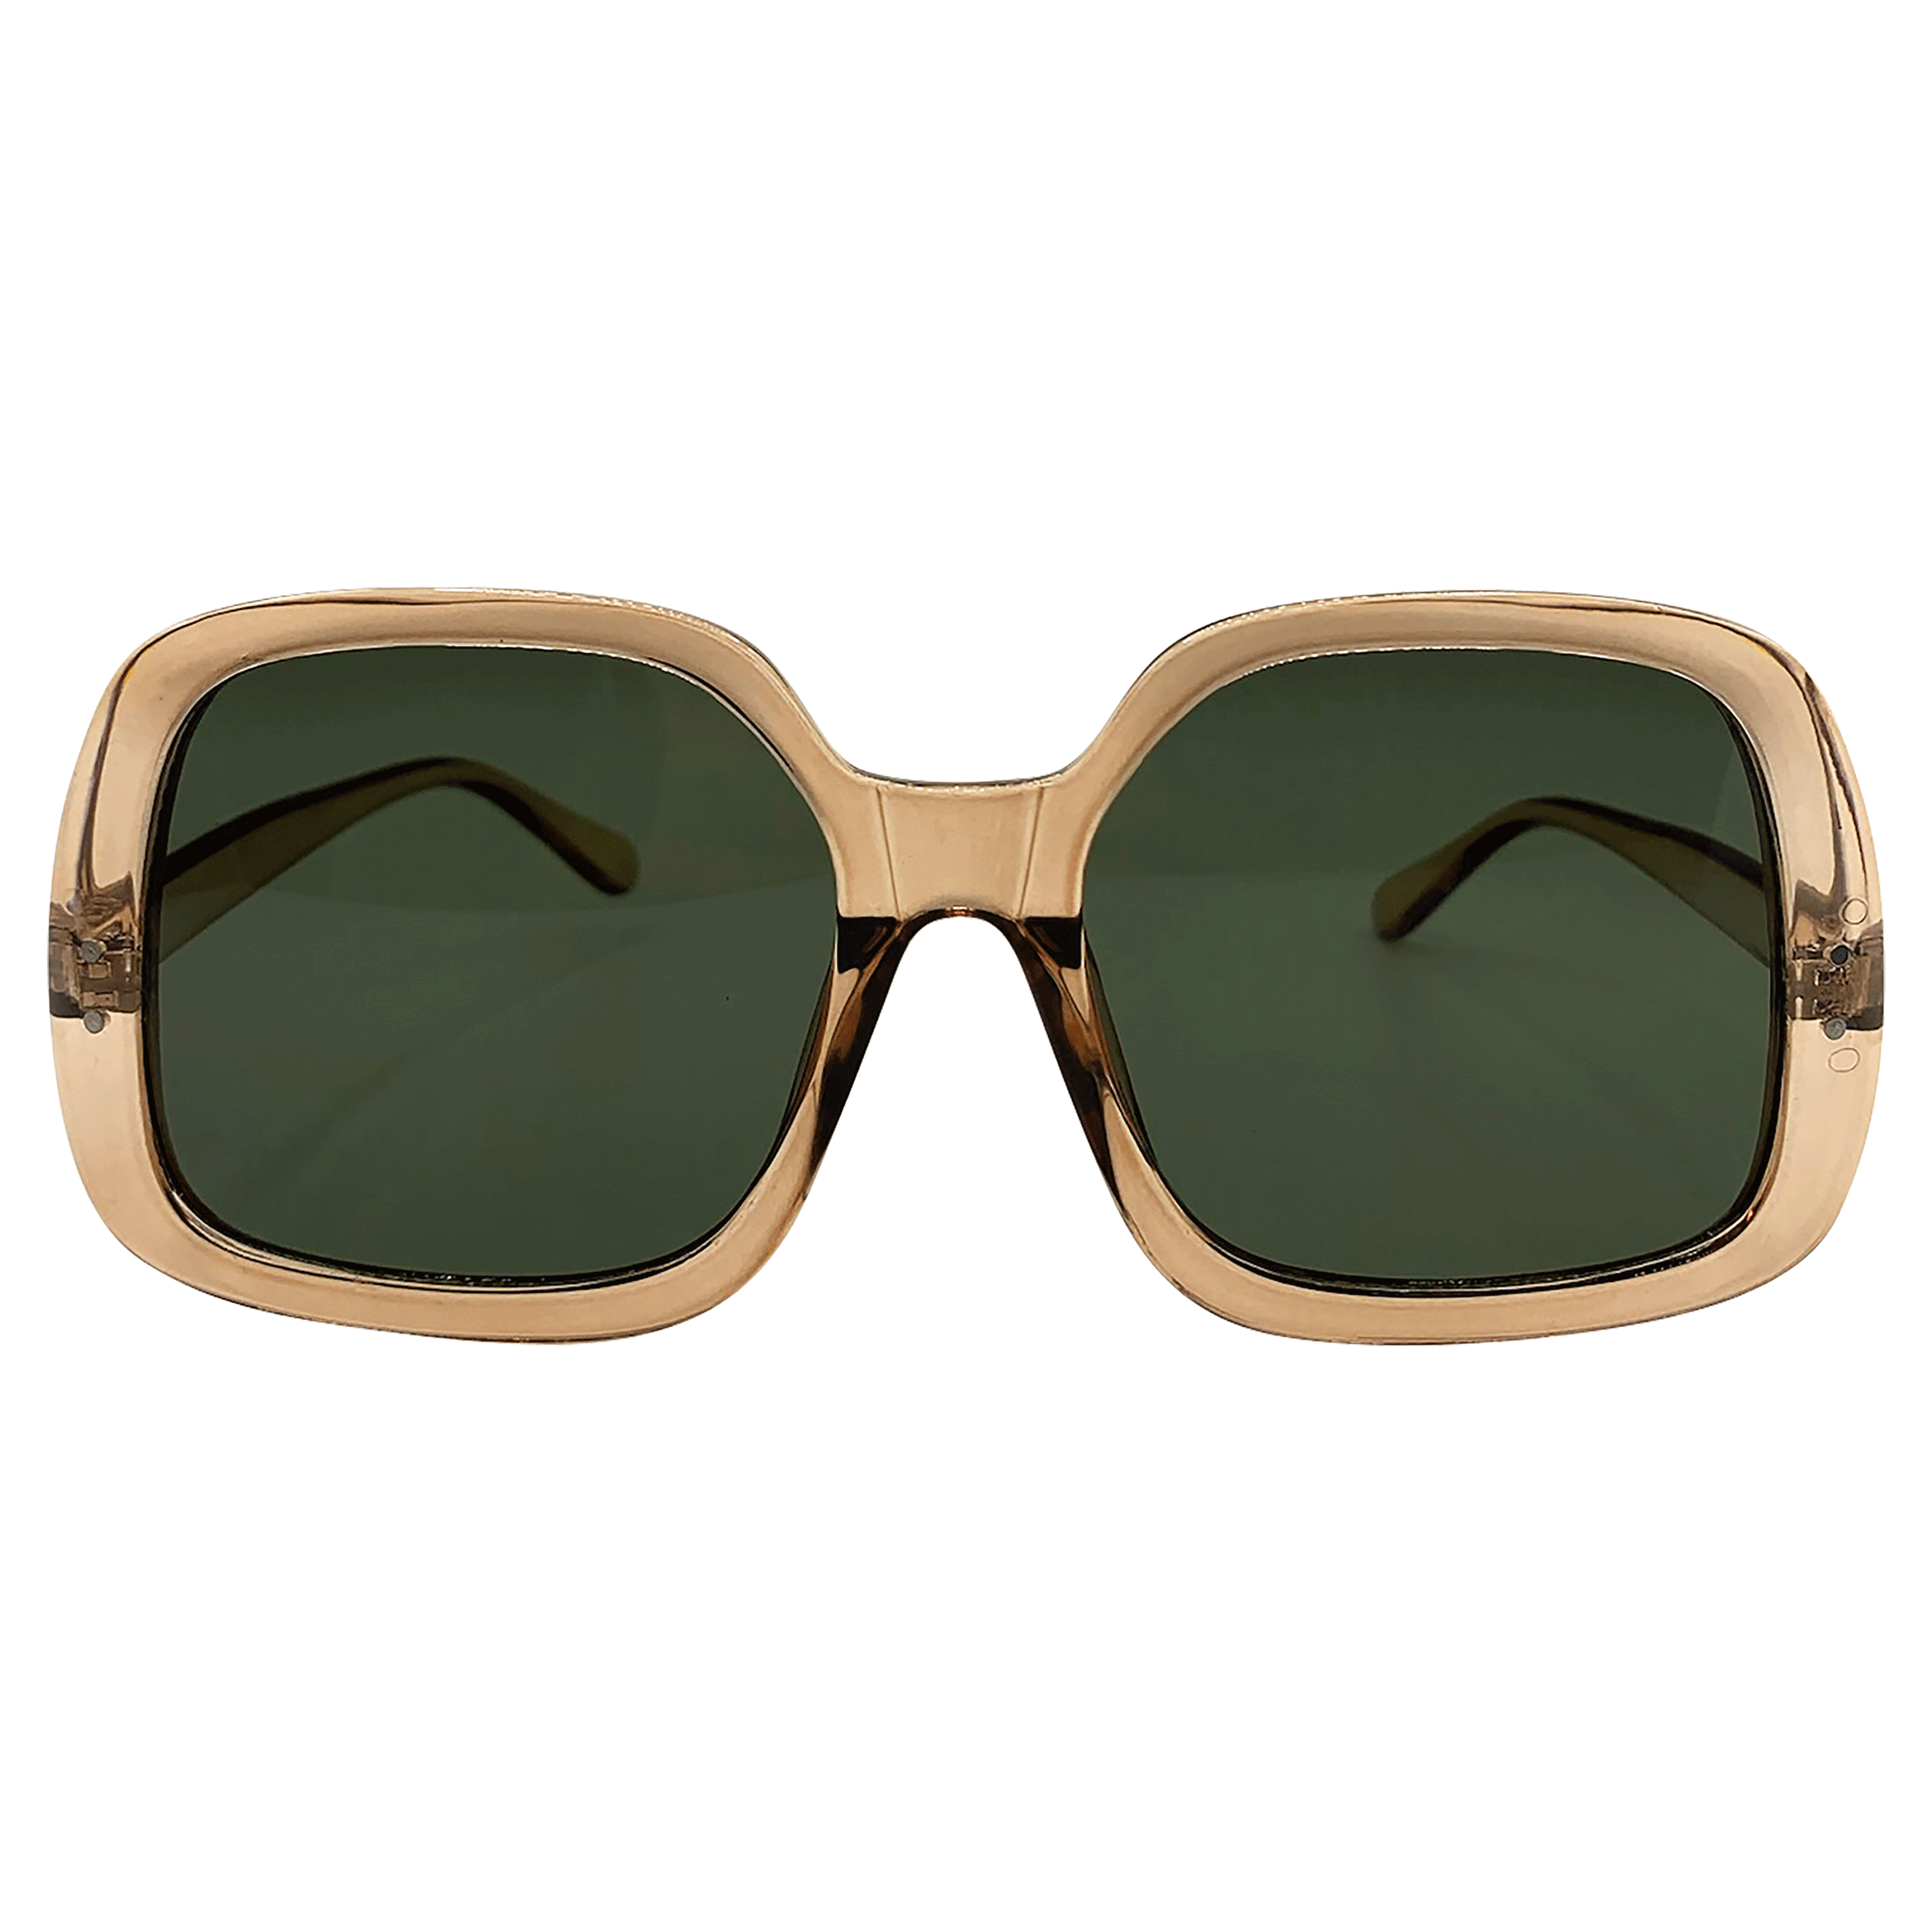 KAI 70s-Inspired Sunglasses